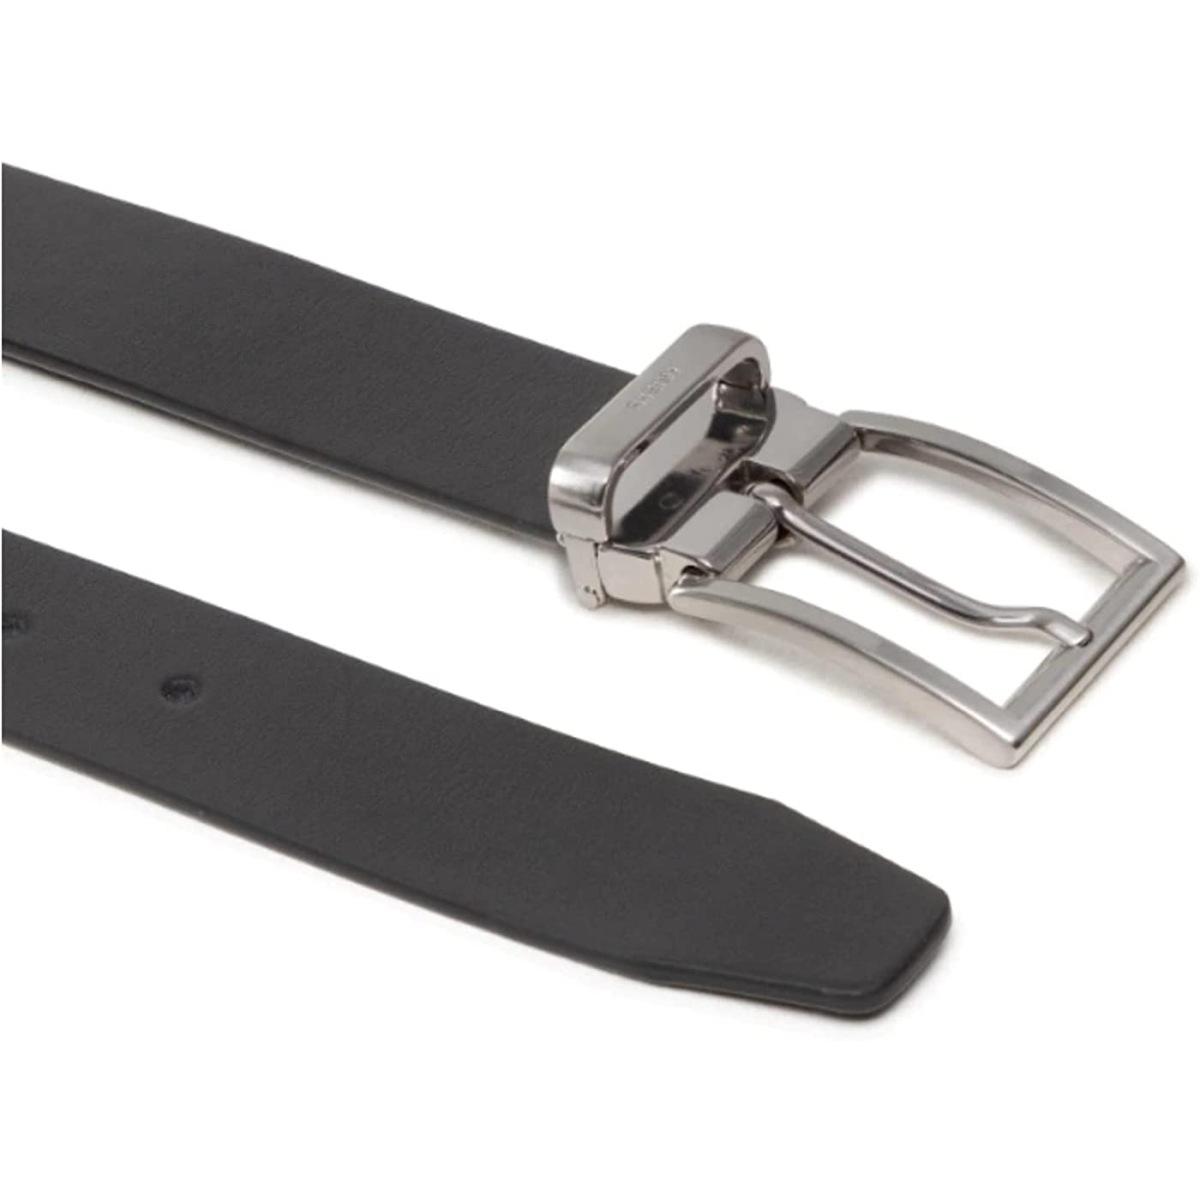 Adjustable belt